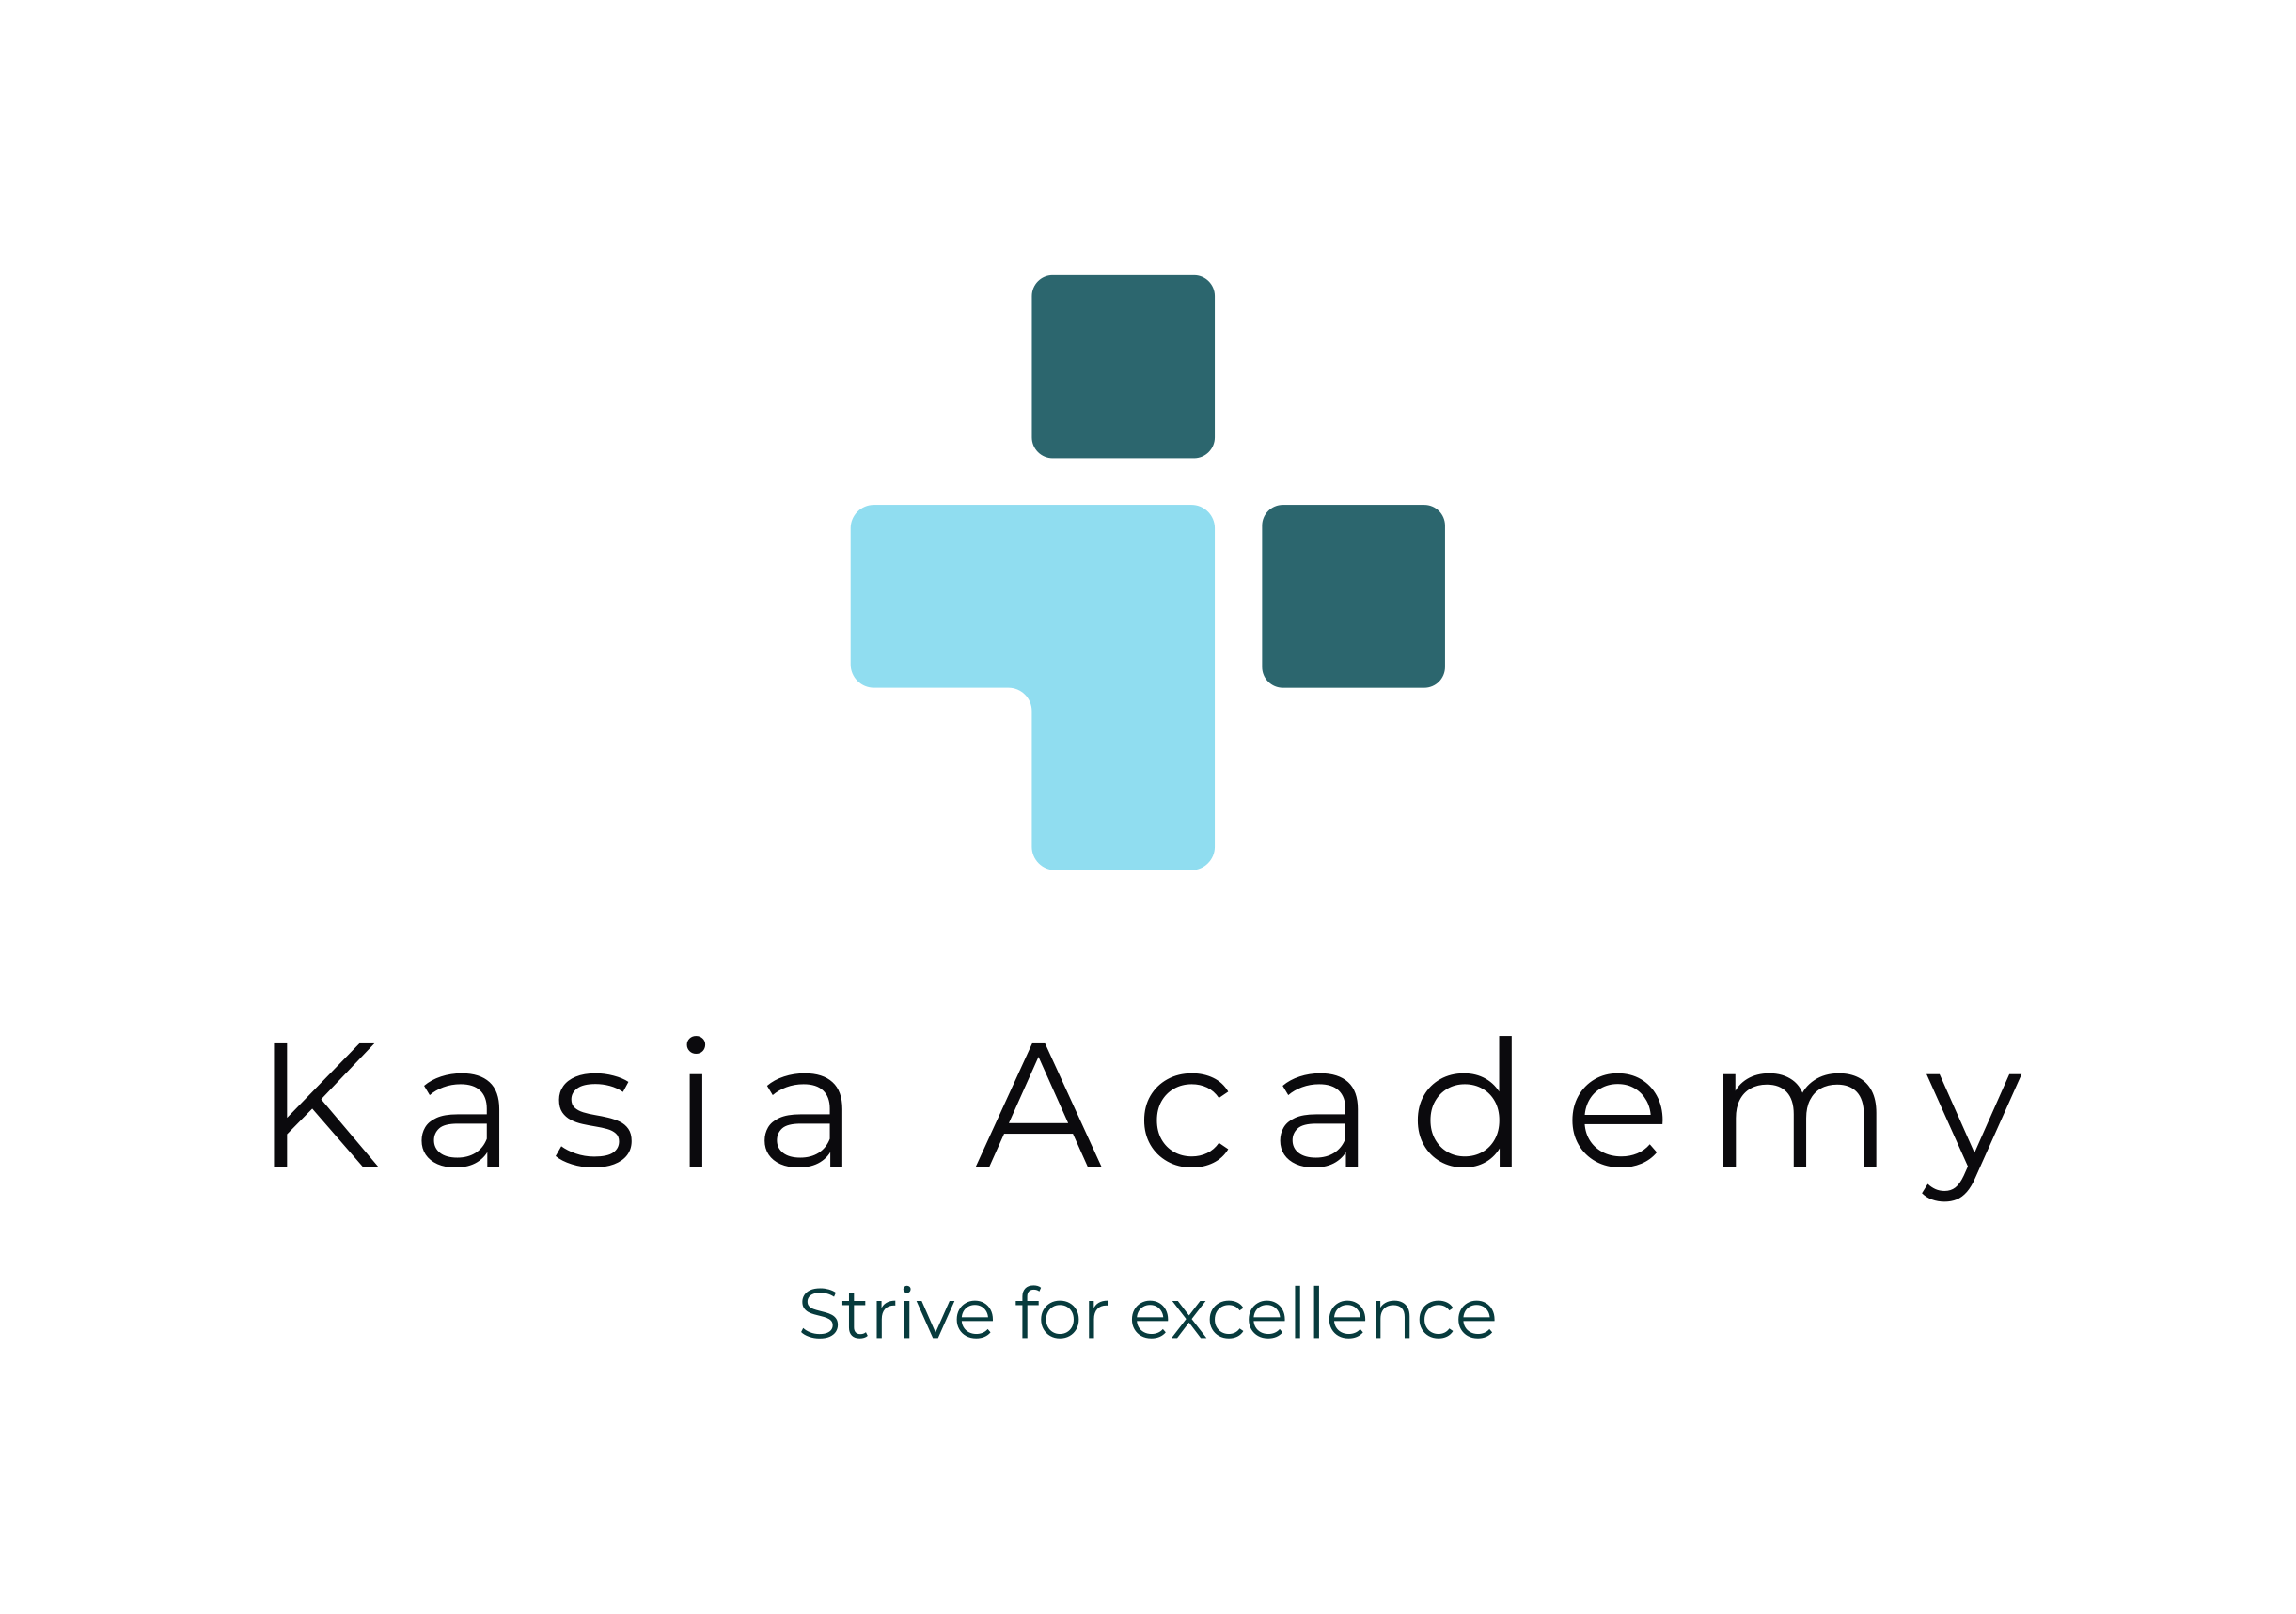 Kasia Academy